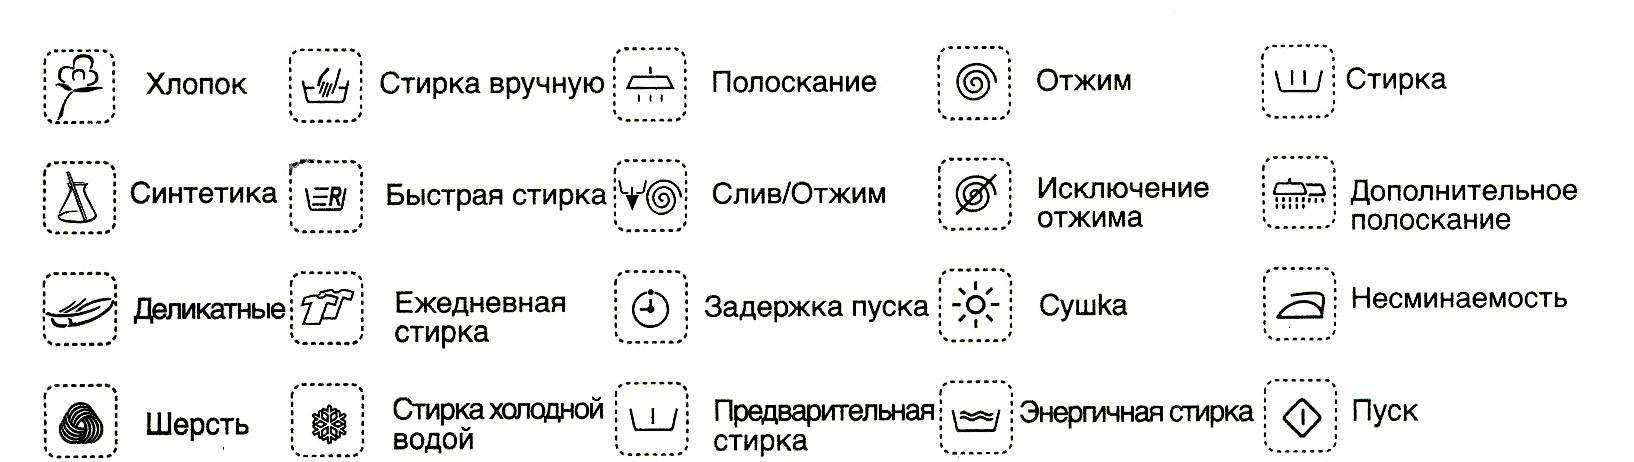 Значки на стиральной машине: разбор основных символов Как расшифровать значки на стиралках самых популярных брендов